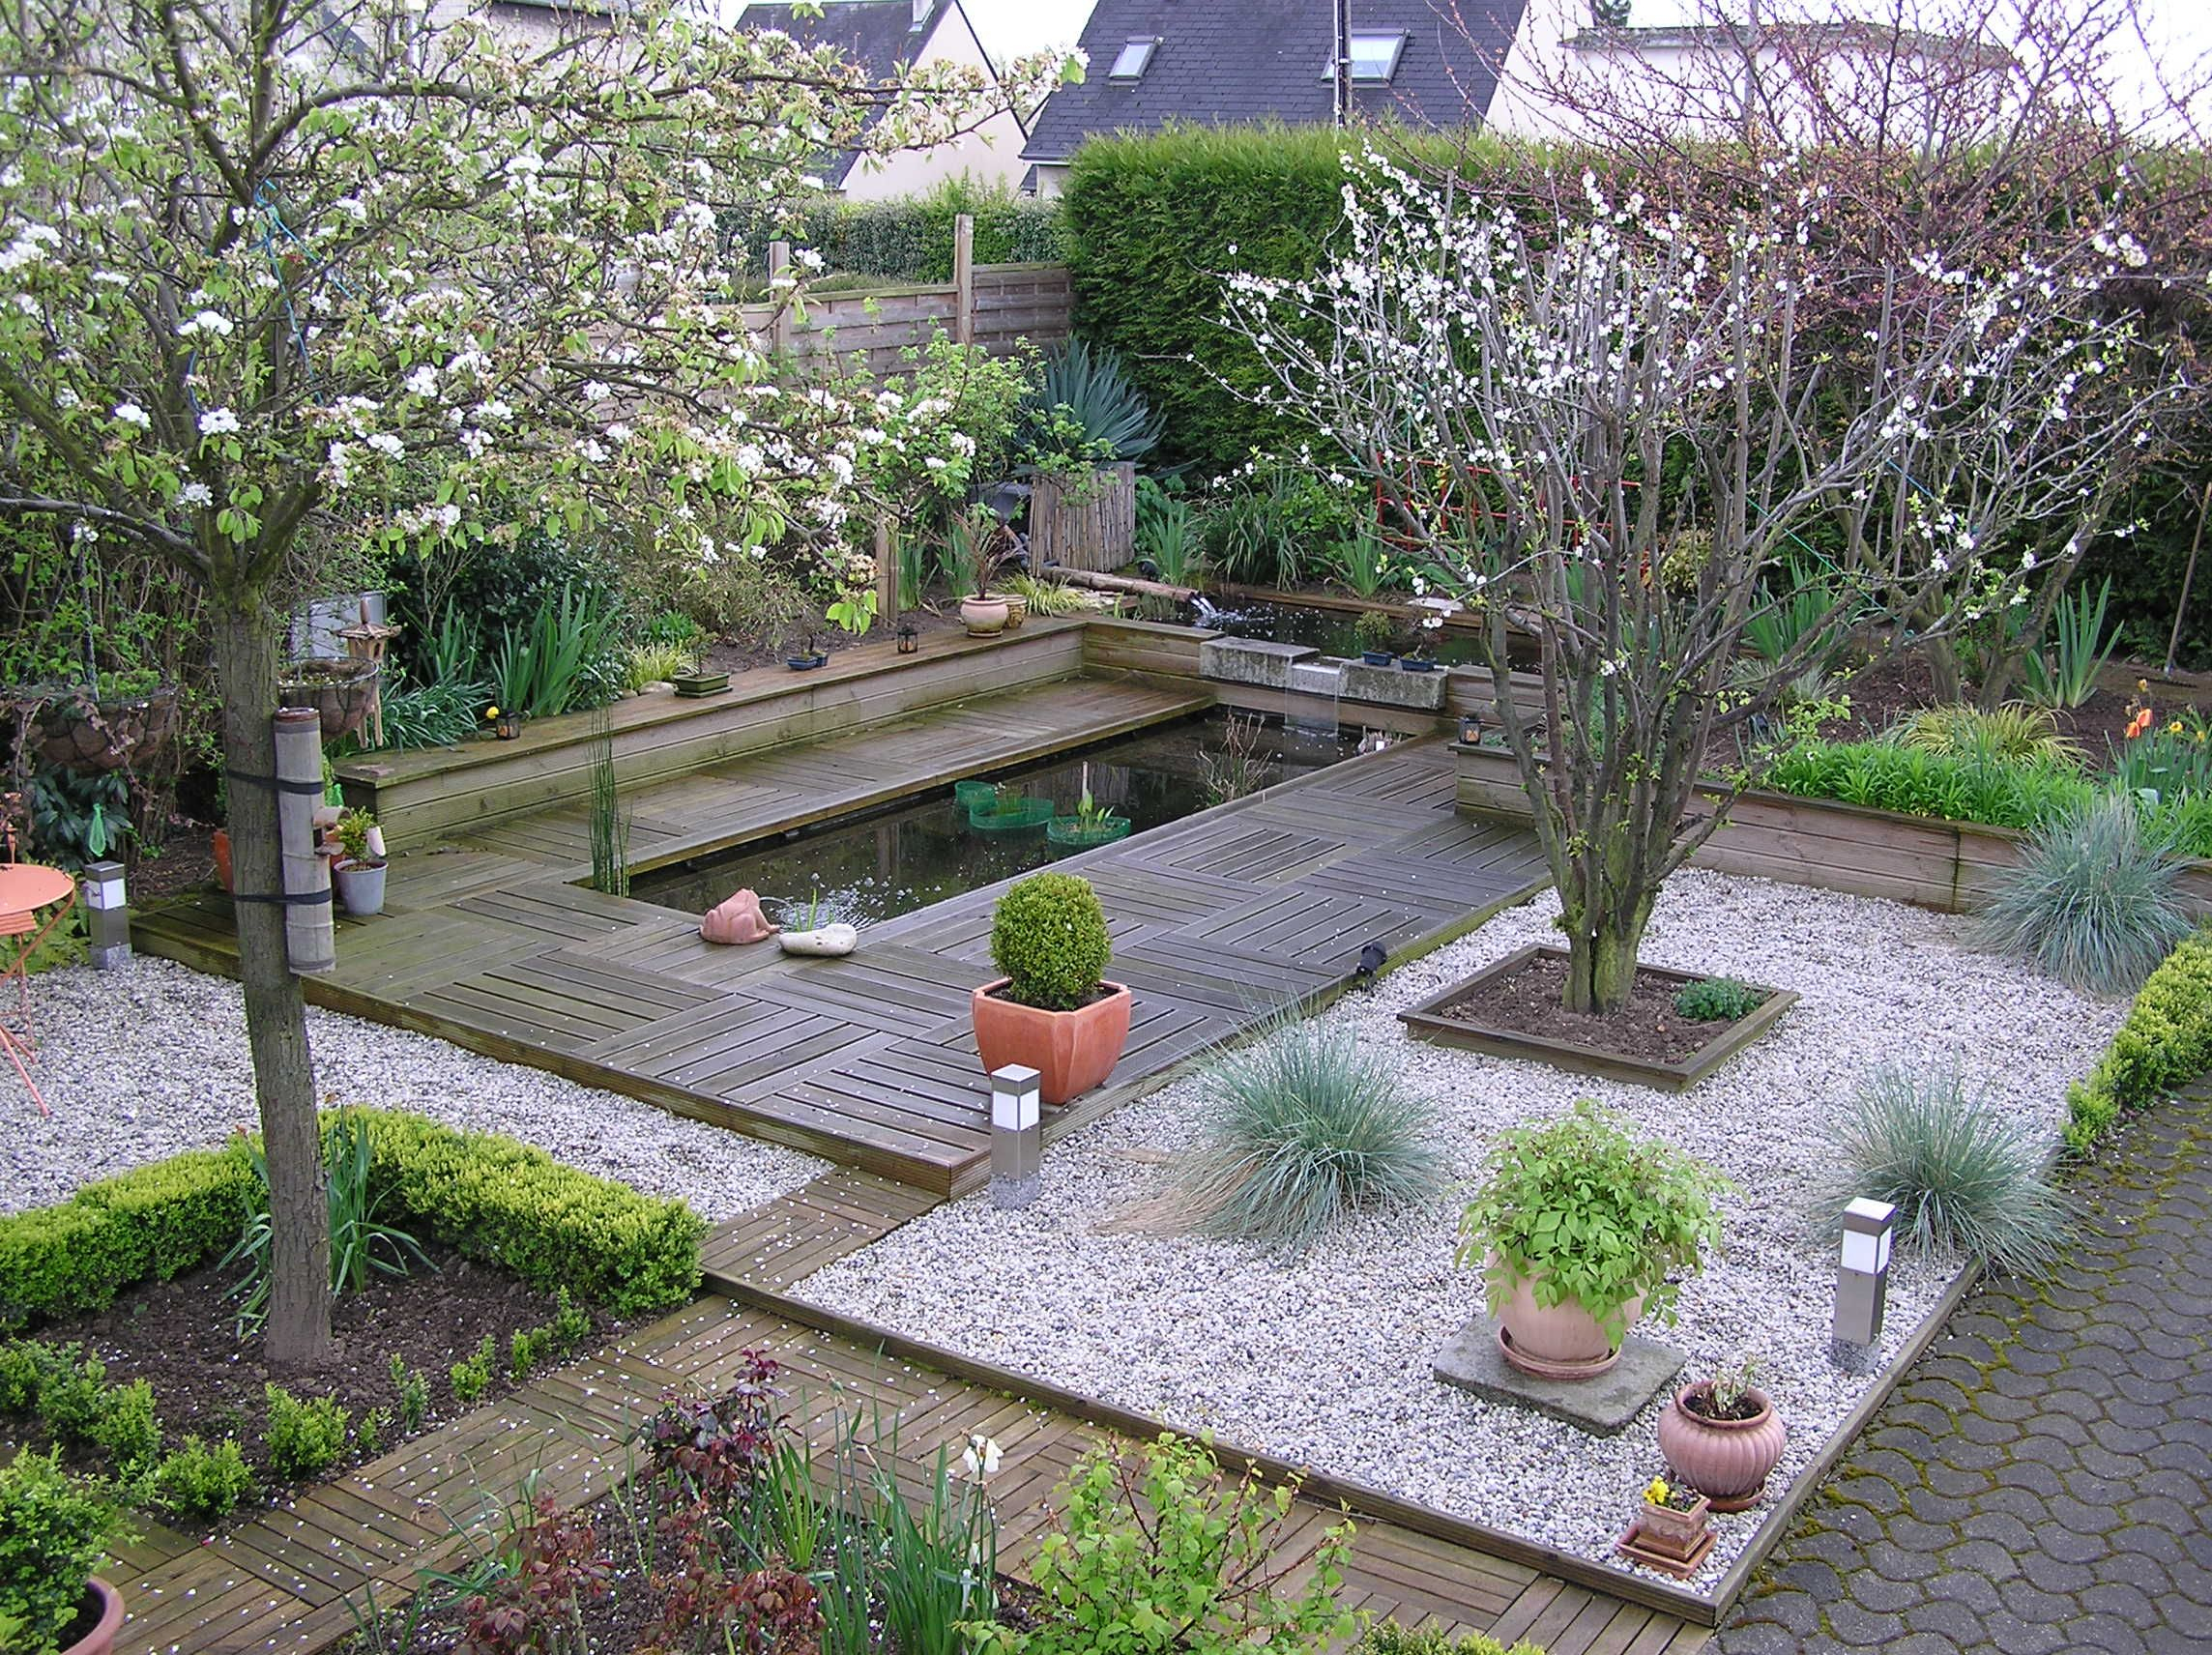 Créer Une Pièce D'eau Dans Son Jardin. | Jardin Exterieur ... pour Conception Bassin De Jardin